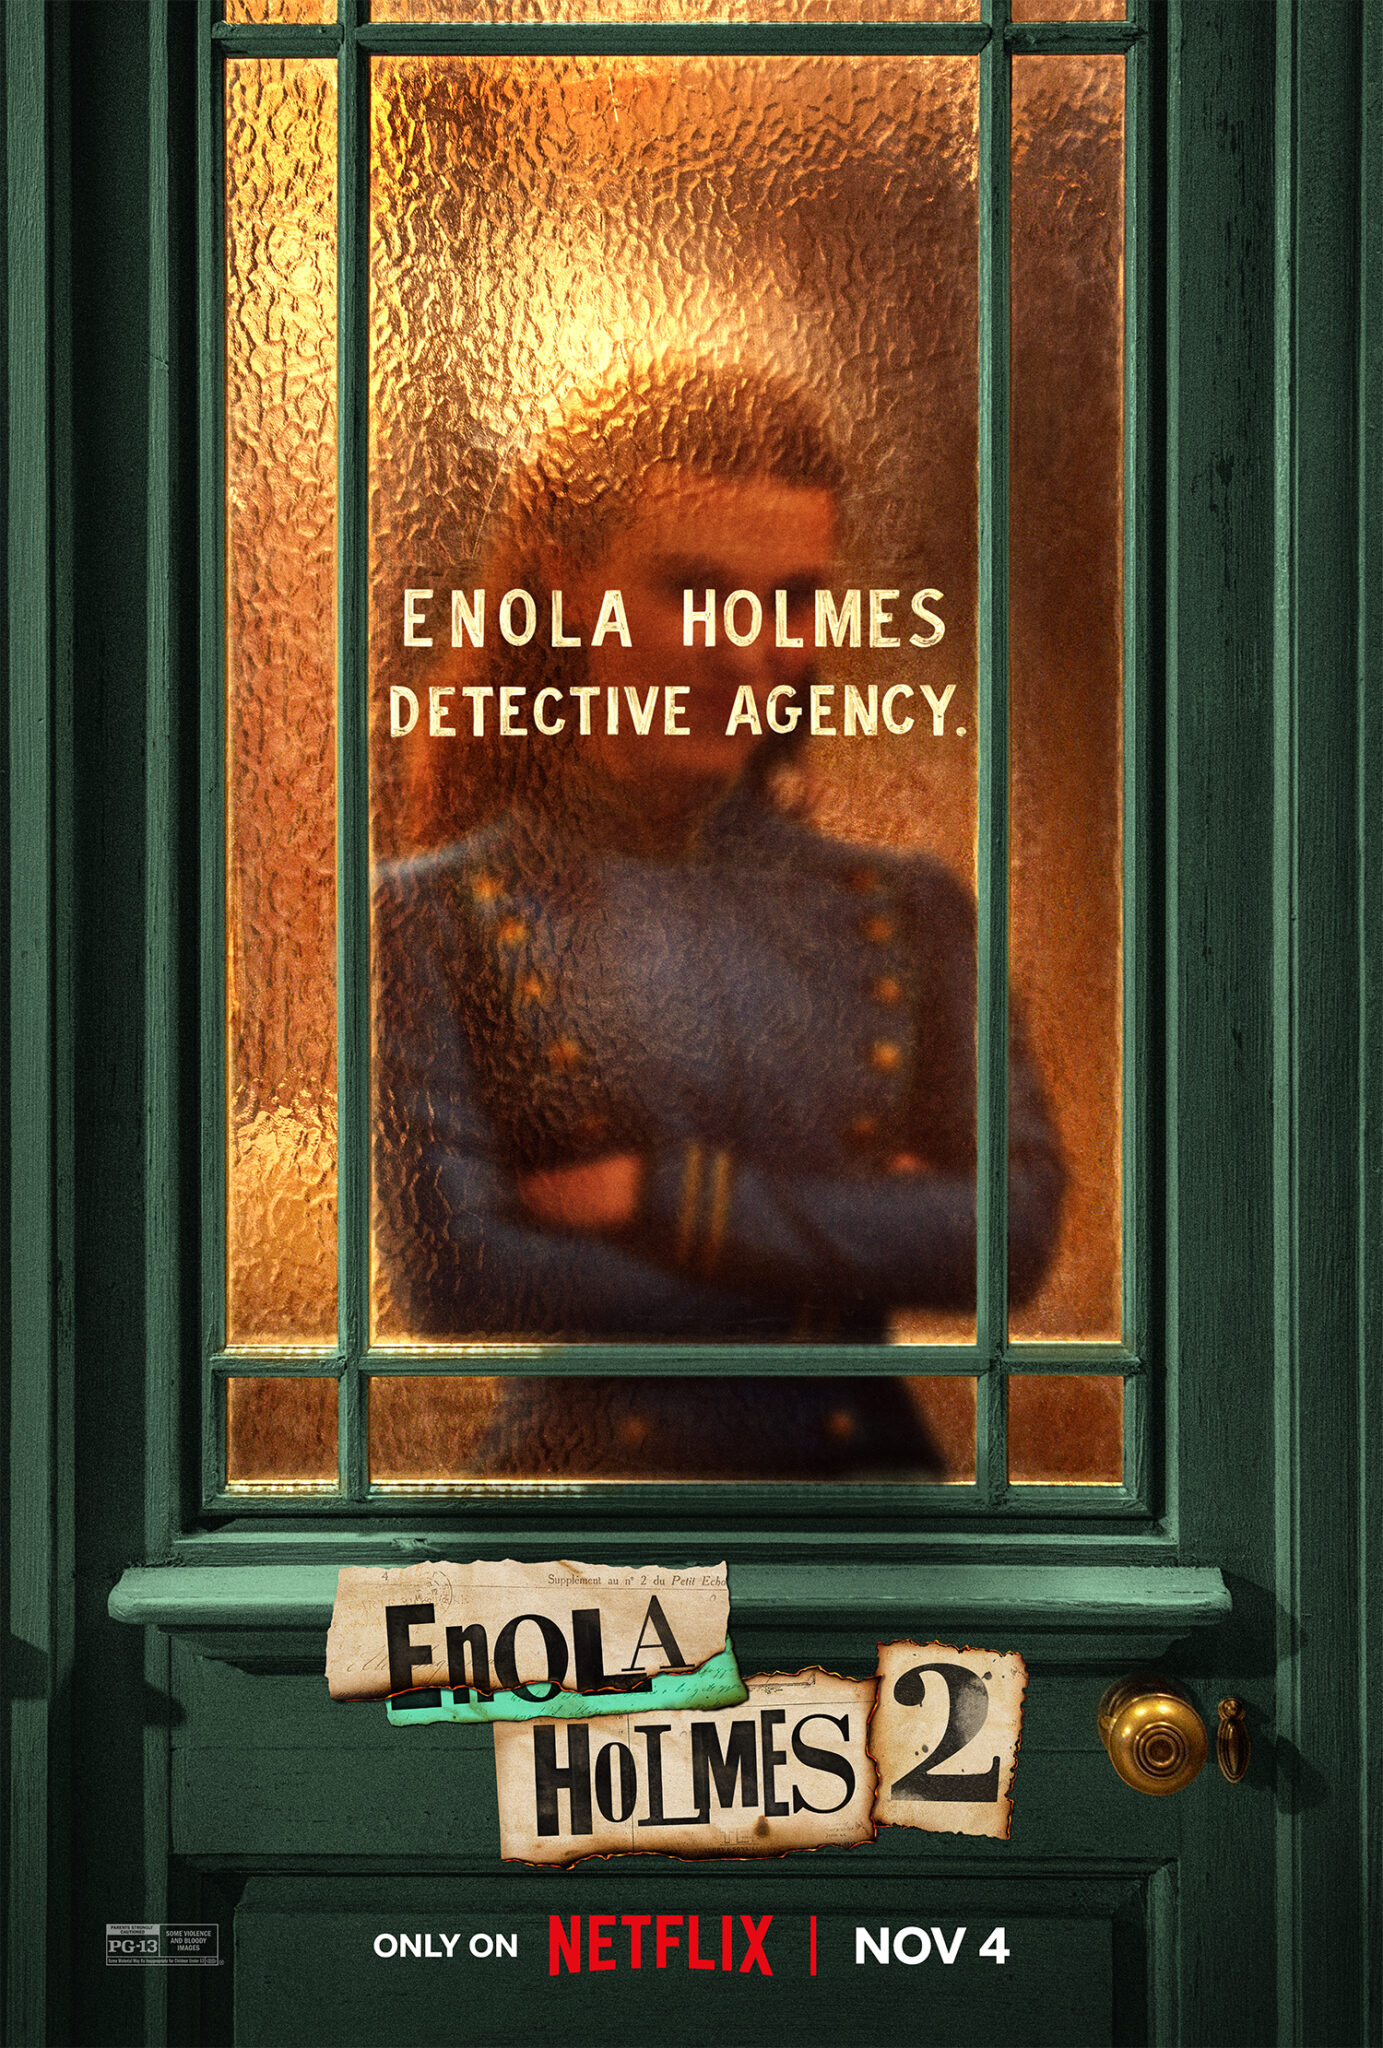 Das Poster zu Enola Holmes 2 zeigt die Protagonistin hinter einer Glastür mit verschränkten Armen.